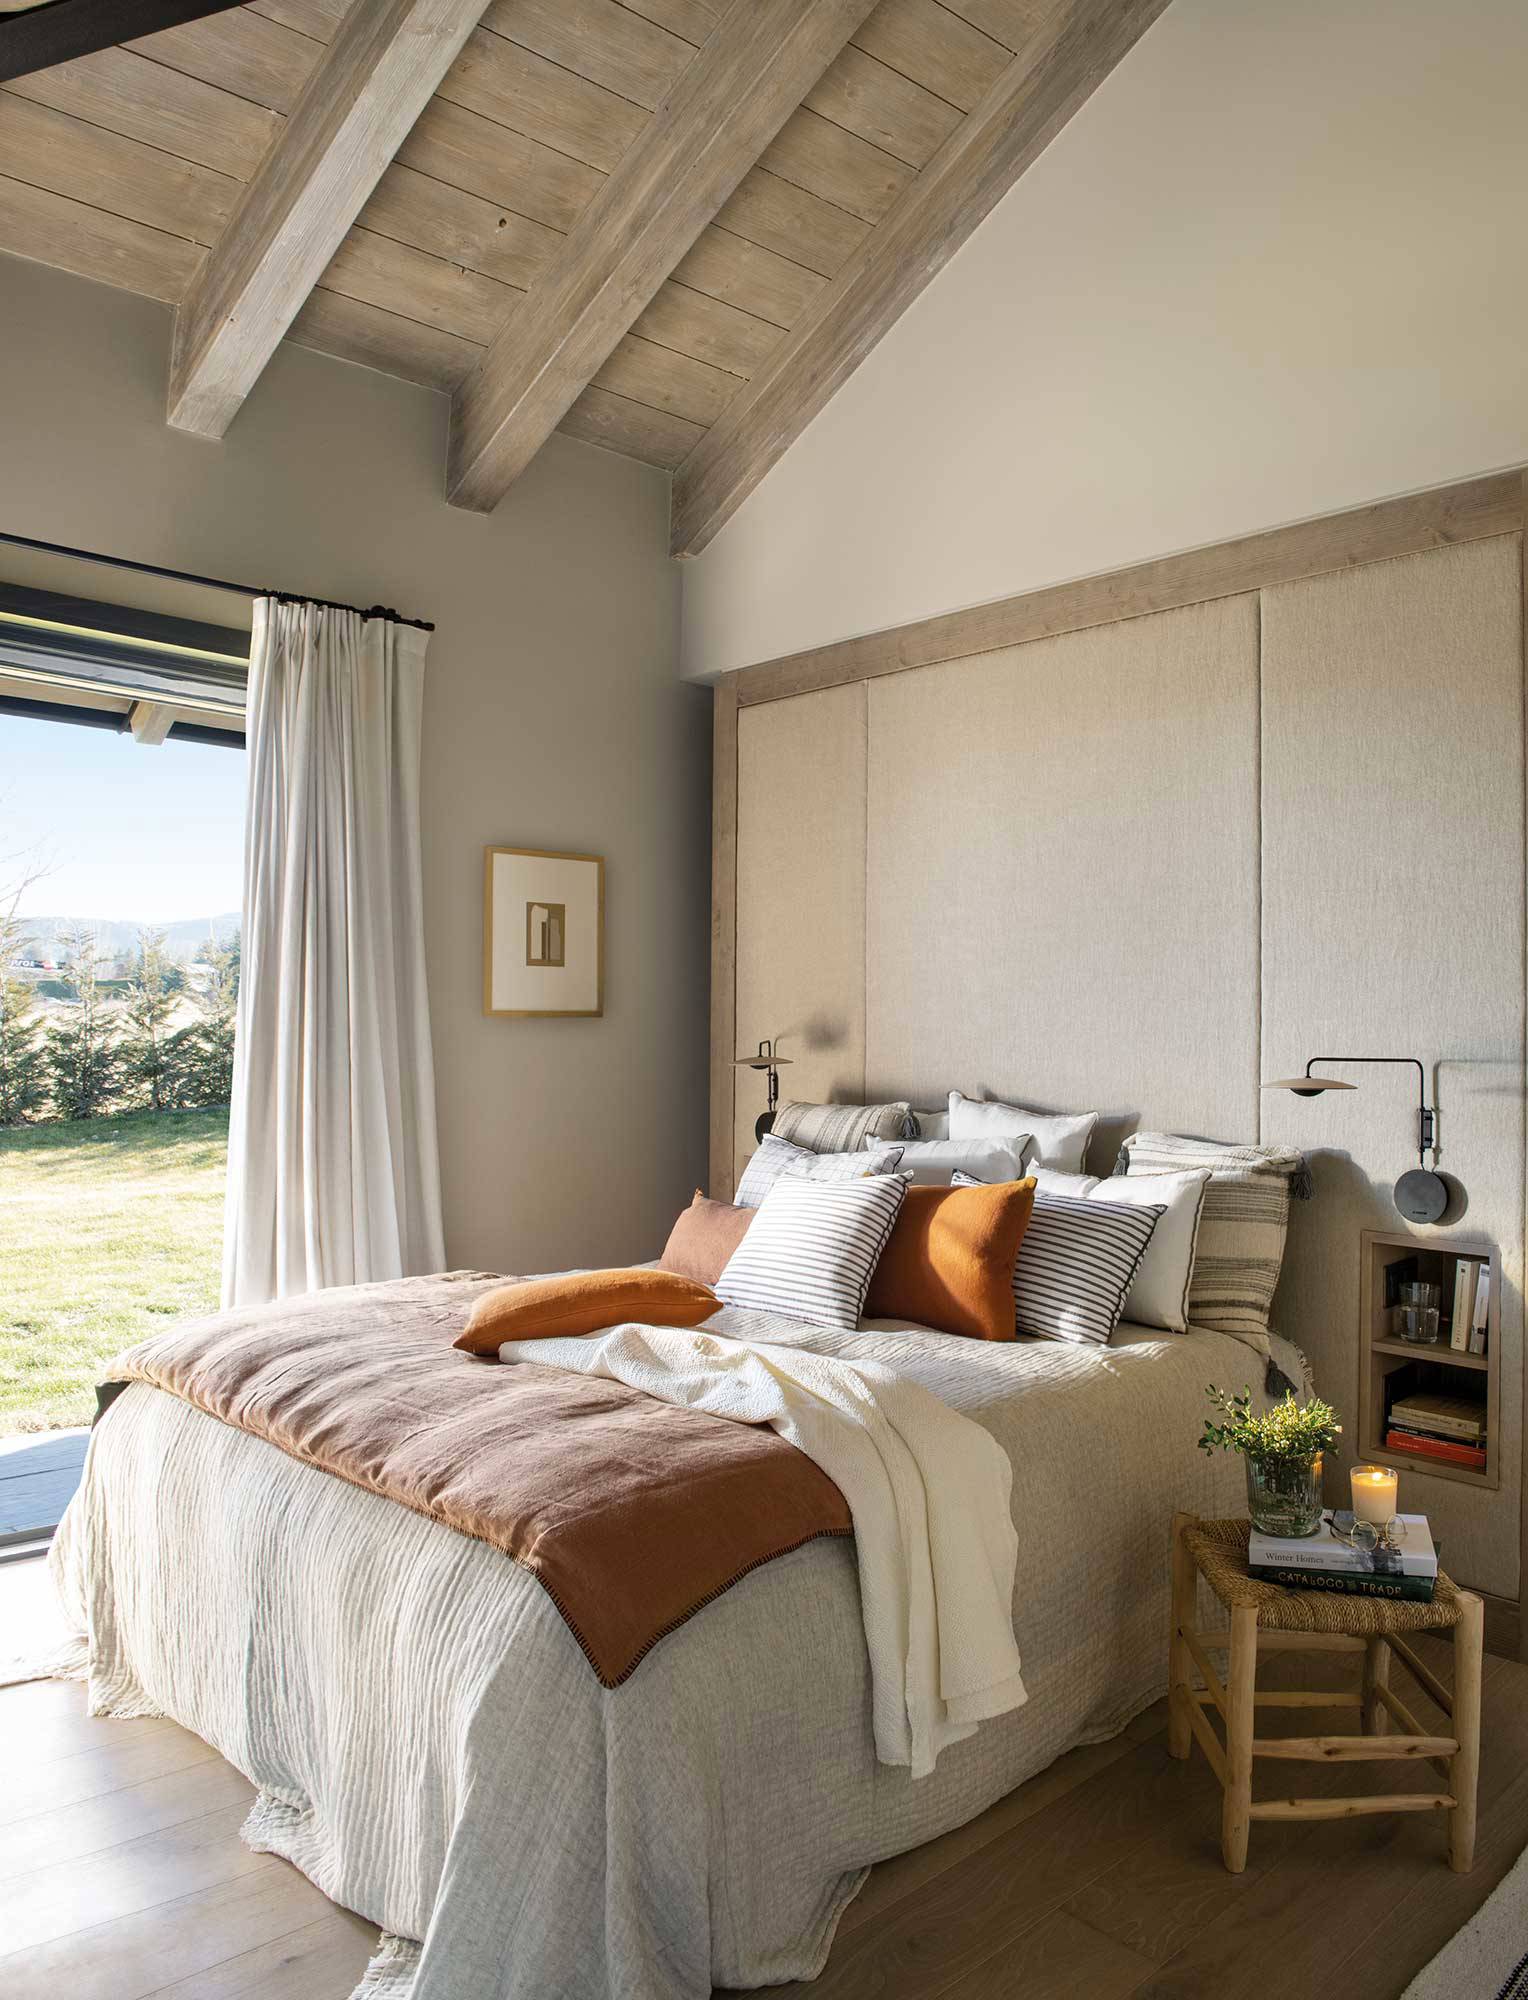 Dormitorio con vigas de madera y gran cabecero tapizado.